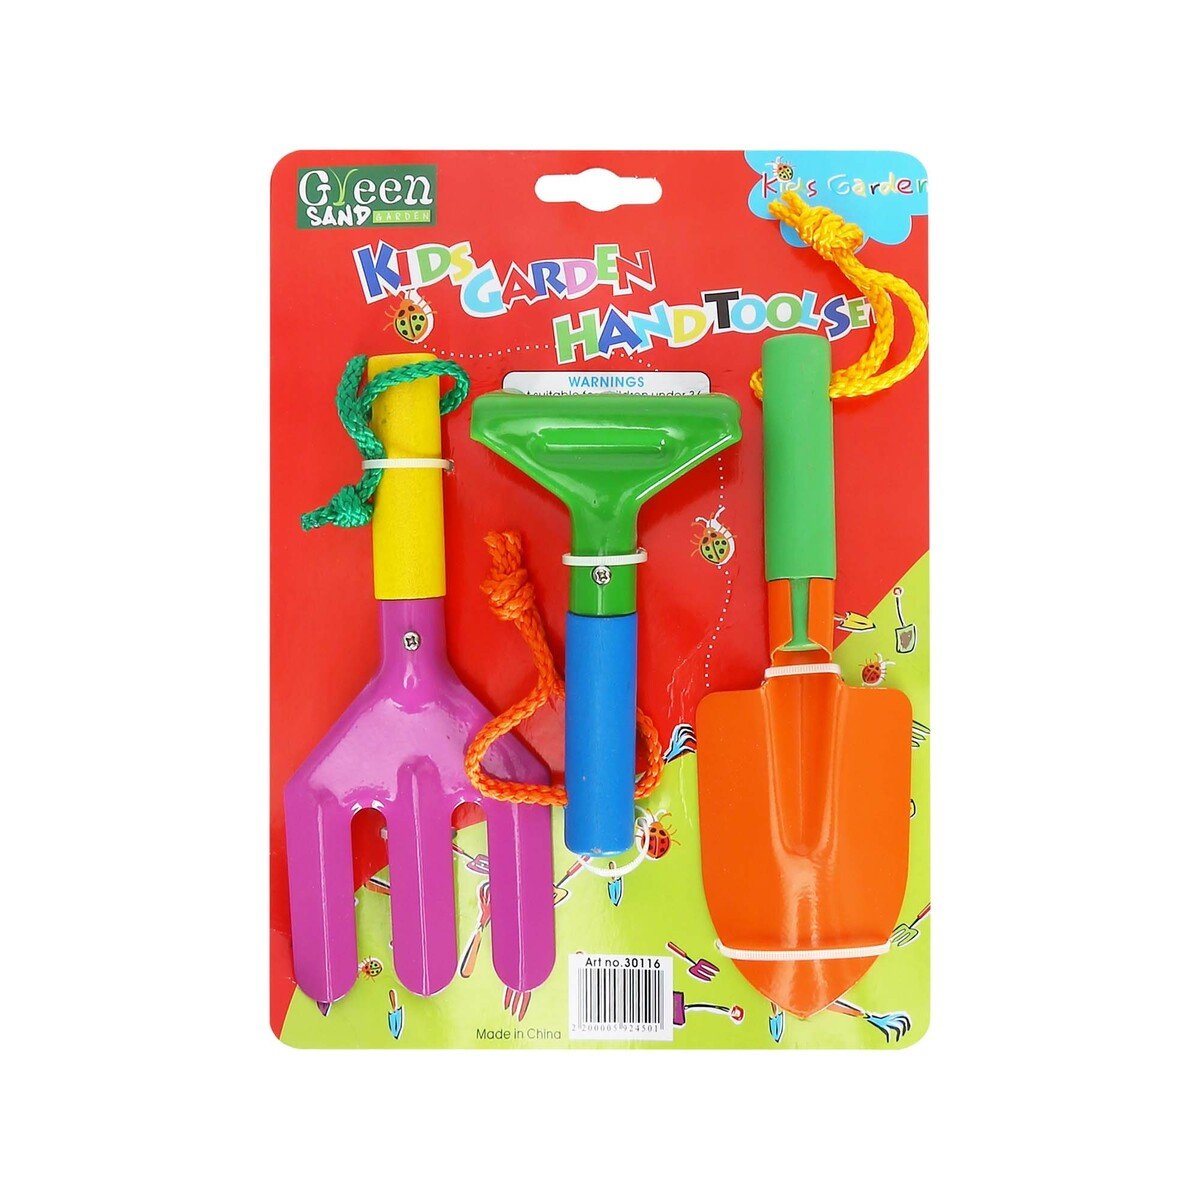 جرين ساند مجموعة أدوات يدوية للحدائق للأطفال 30116